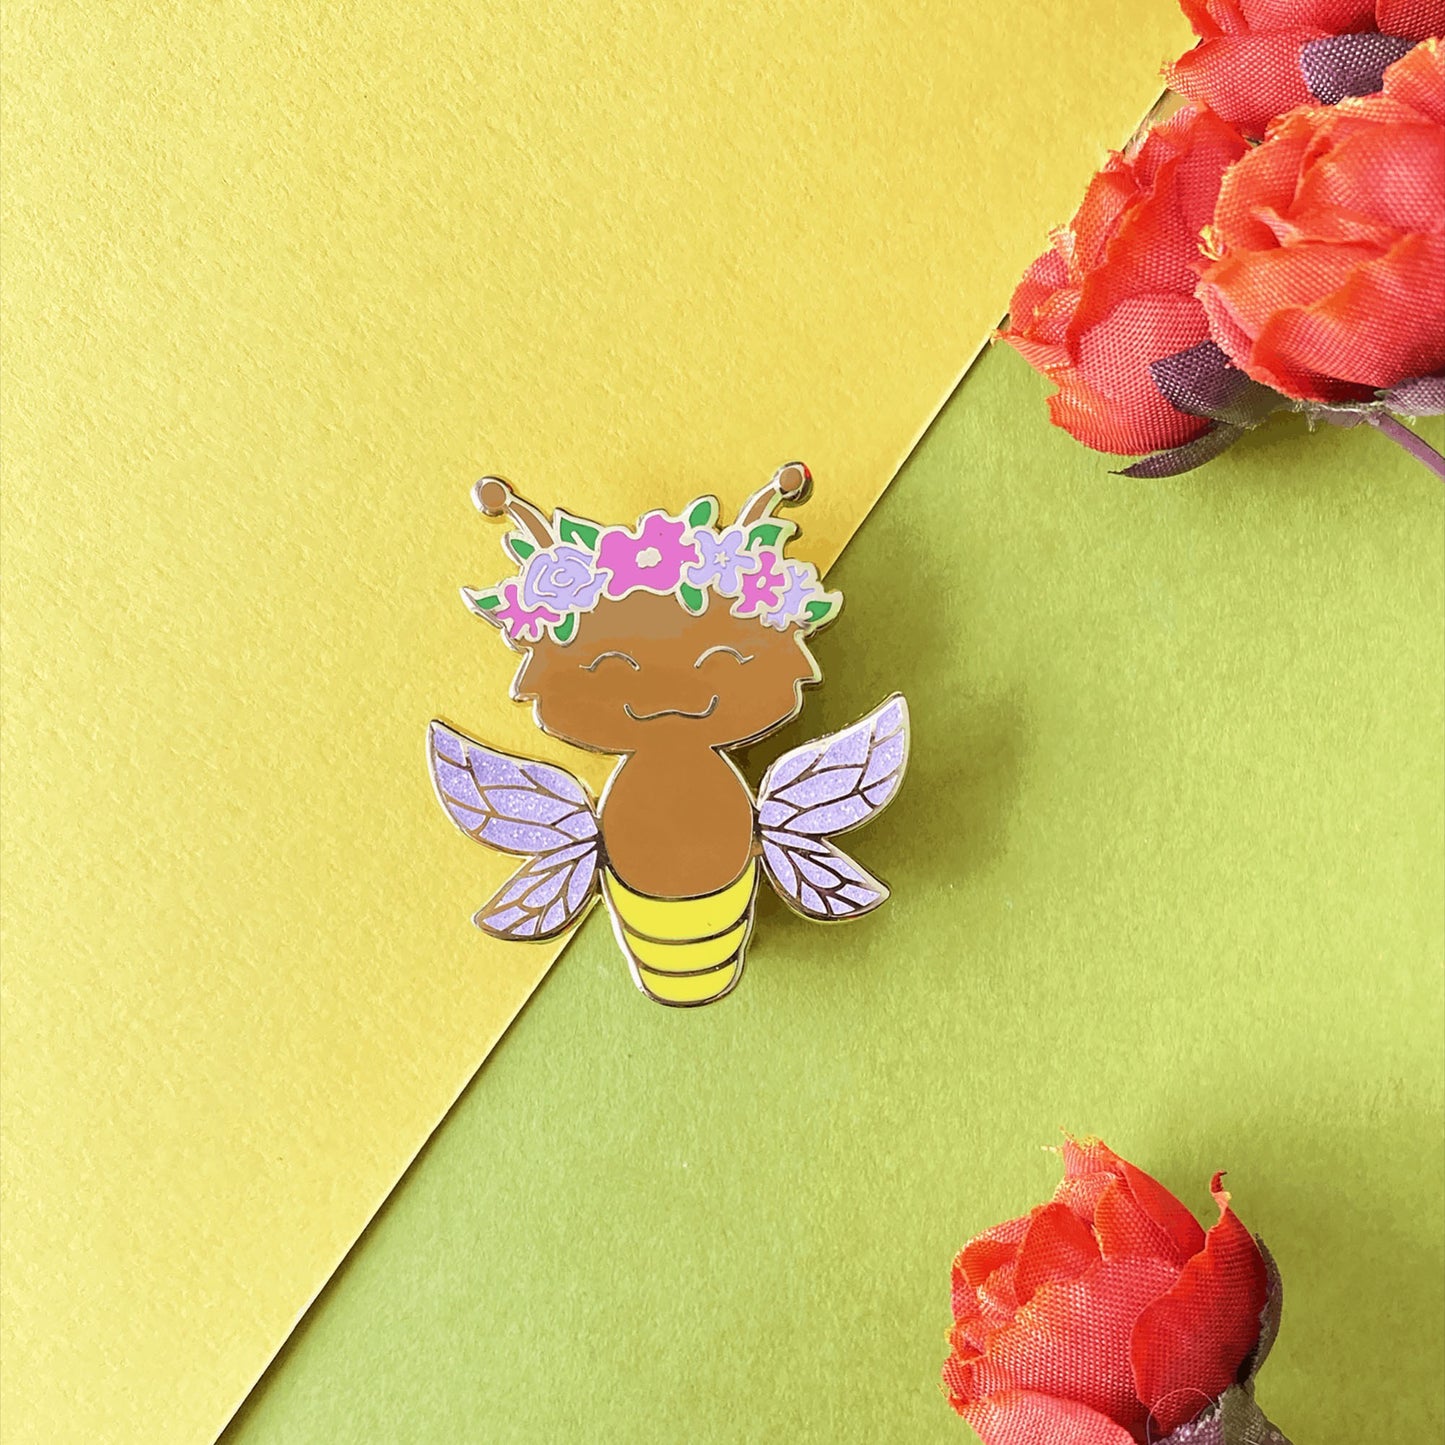 Firefly Fairy enamel pin